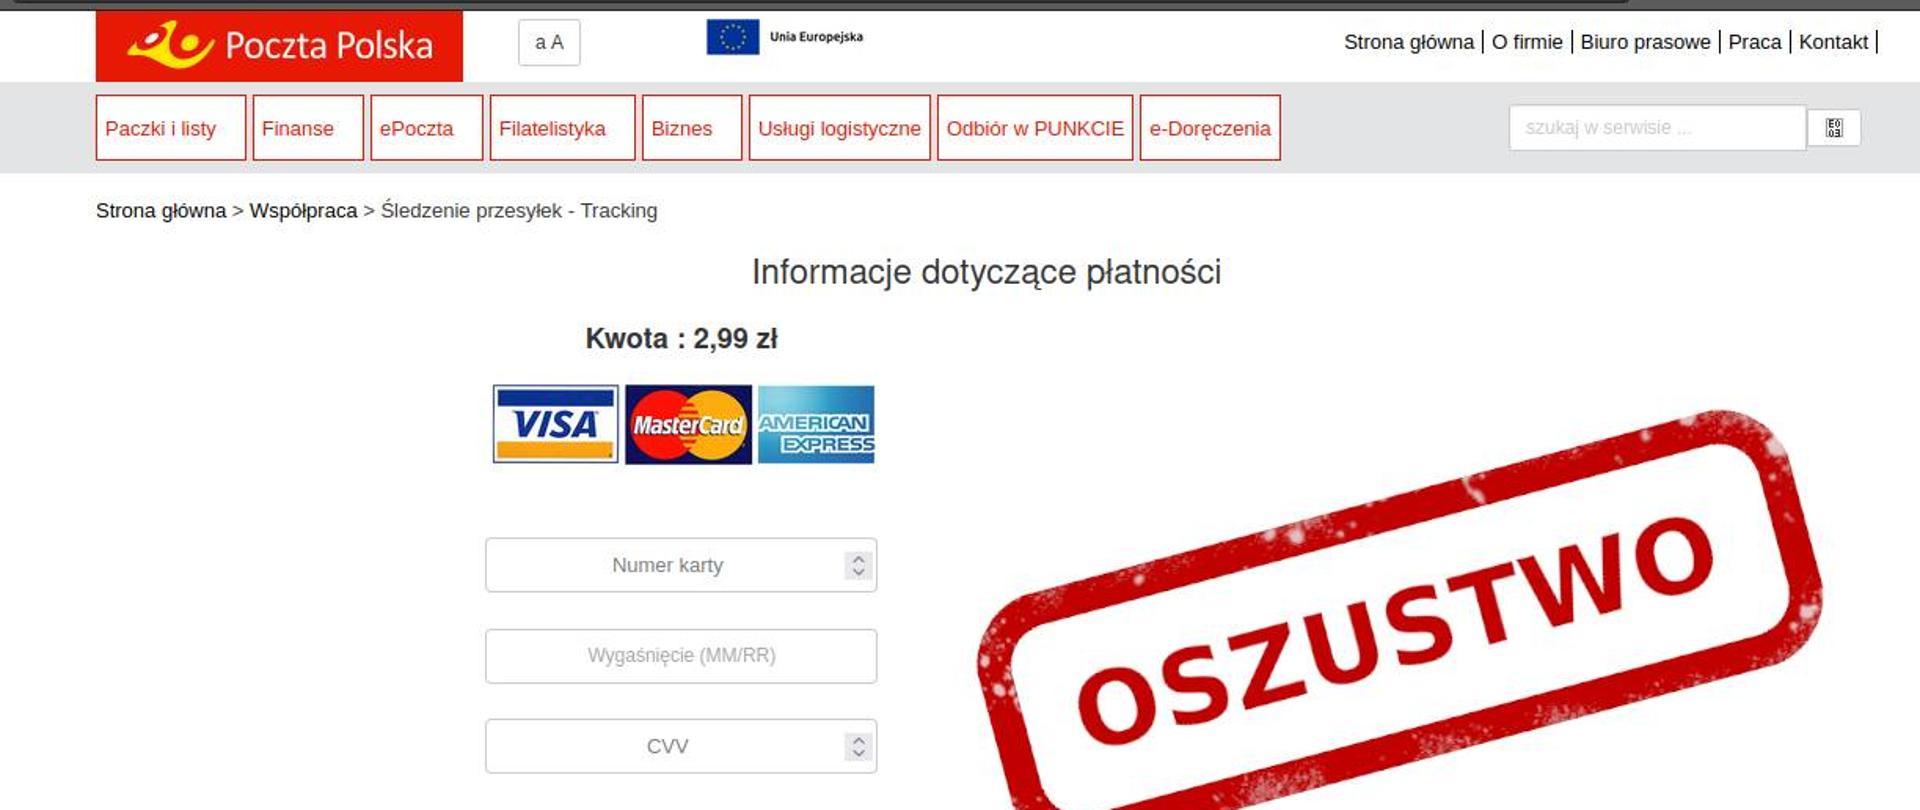 Zdjęcie fałszywej strony internetowej wykorzystującej wizerunek Poczty Polskiej , po prawej stornie napis oszustwo